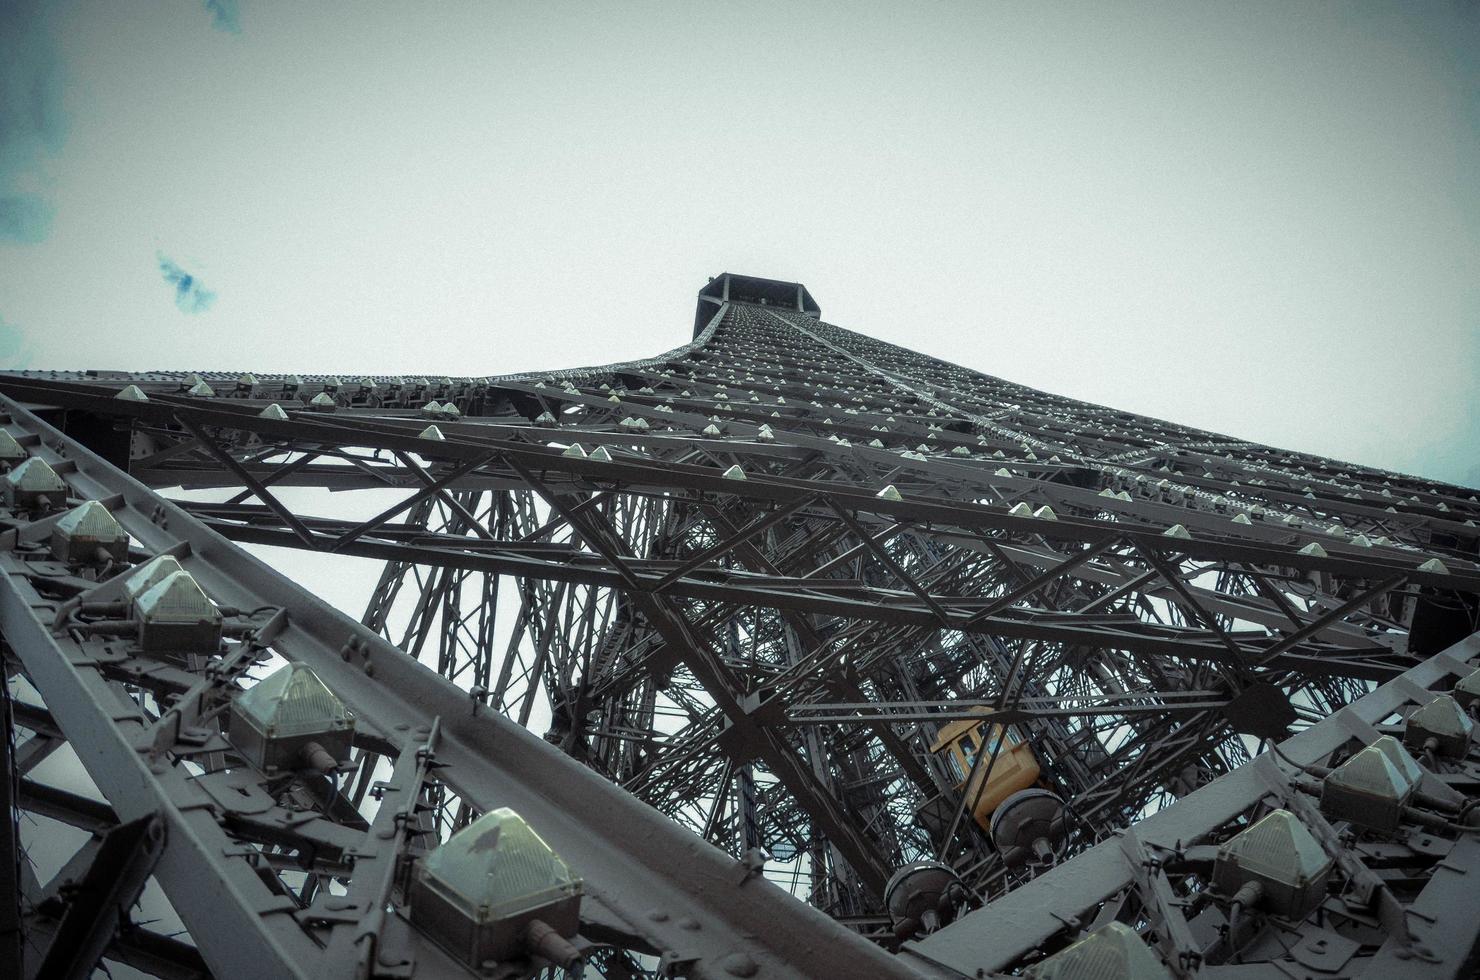 le tour Eiffel photographié de dessous, sur une été journée dans 2012. le le fer monument symbole de Paris, le Capitale de France photo